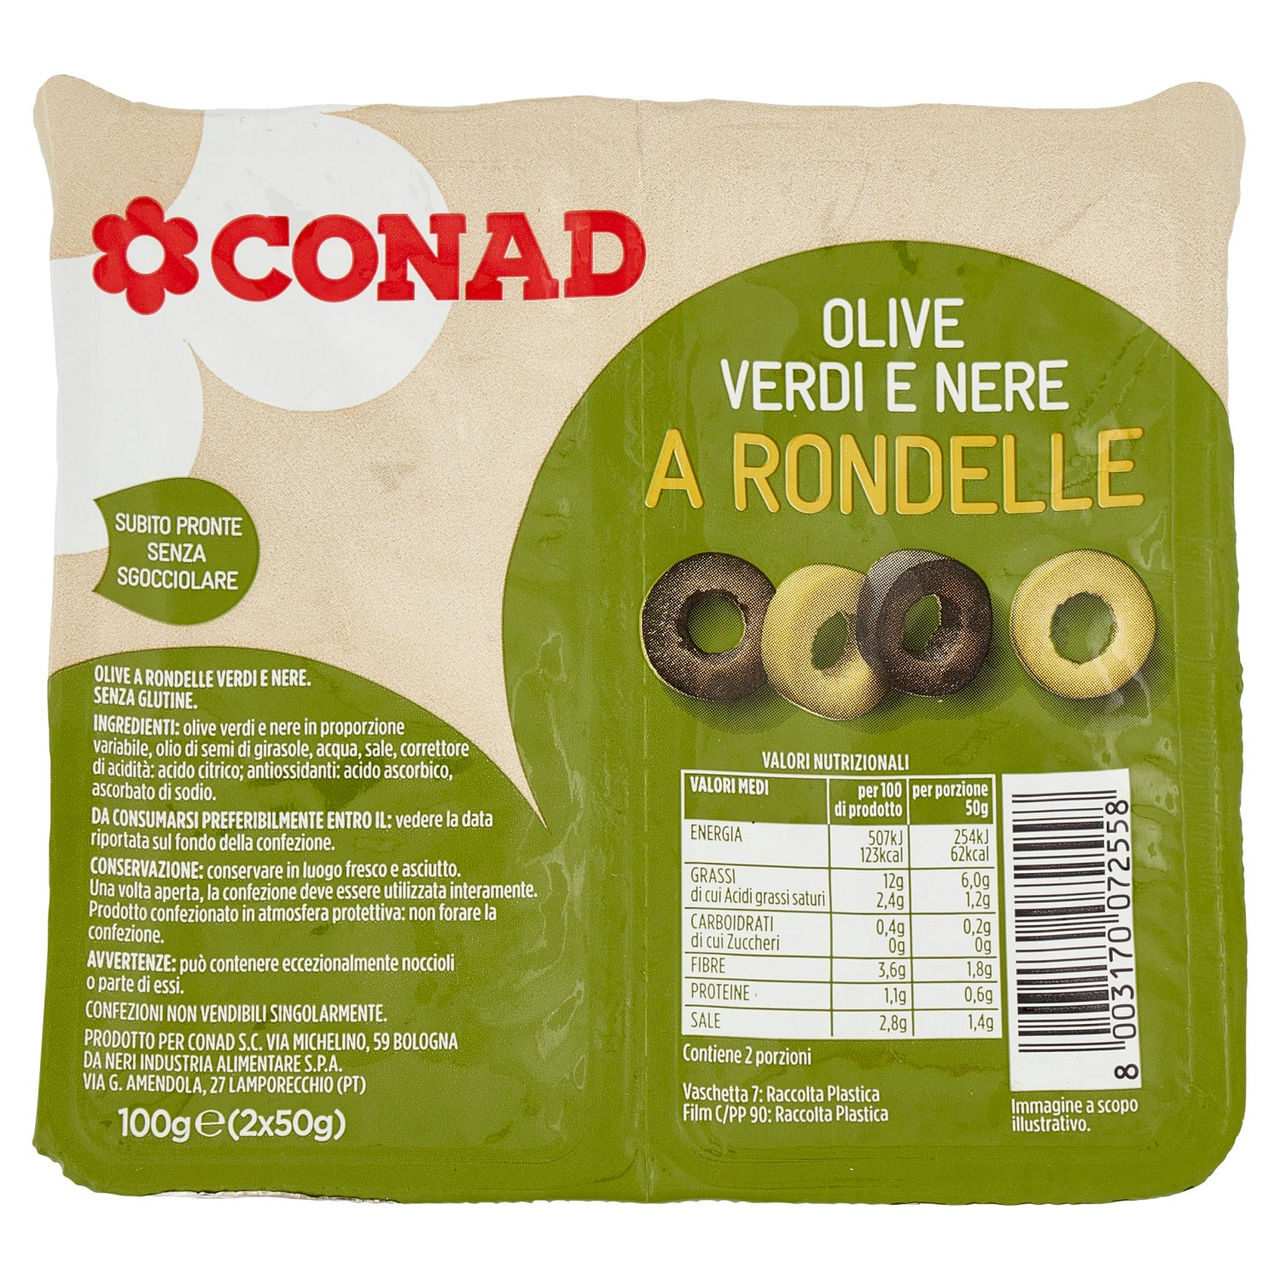 Olive Verdi e Nere a Rondelle Conad online